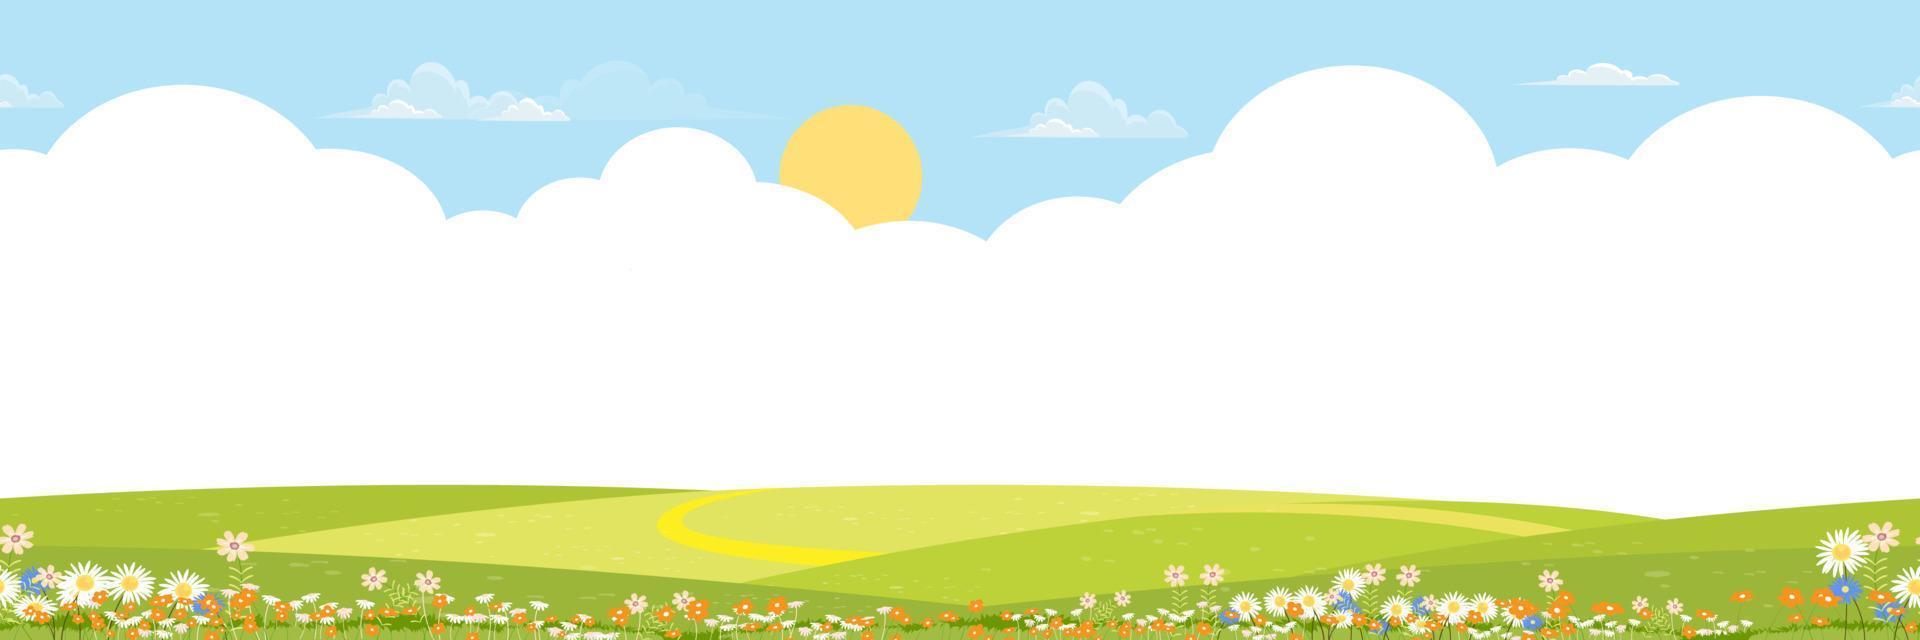 paisaje de campos verdes de primavera de patrones sin fisuras con nubes sobre fondo de cielo azul, panorama interminable hermosa naturaleza rural en primavera con tierra de hierba en hill.vector para banner de primavera o verano vector